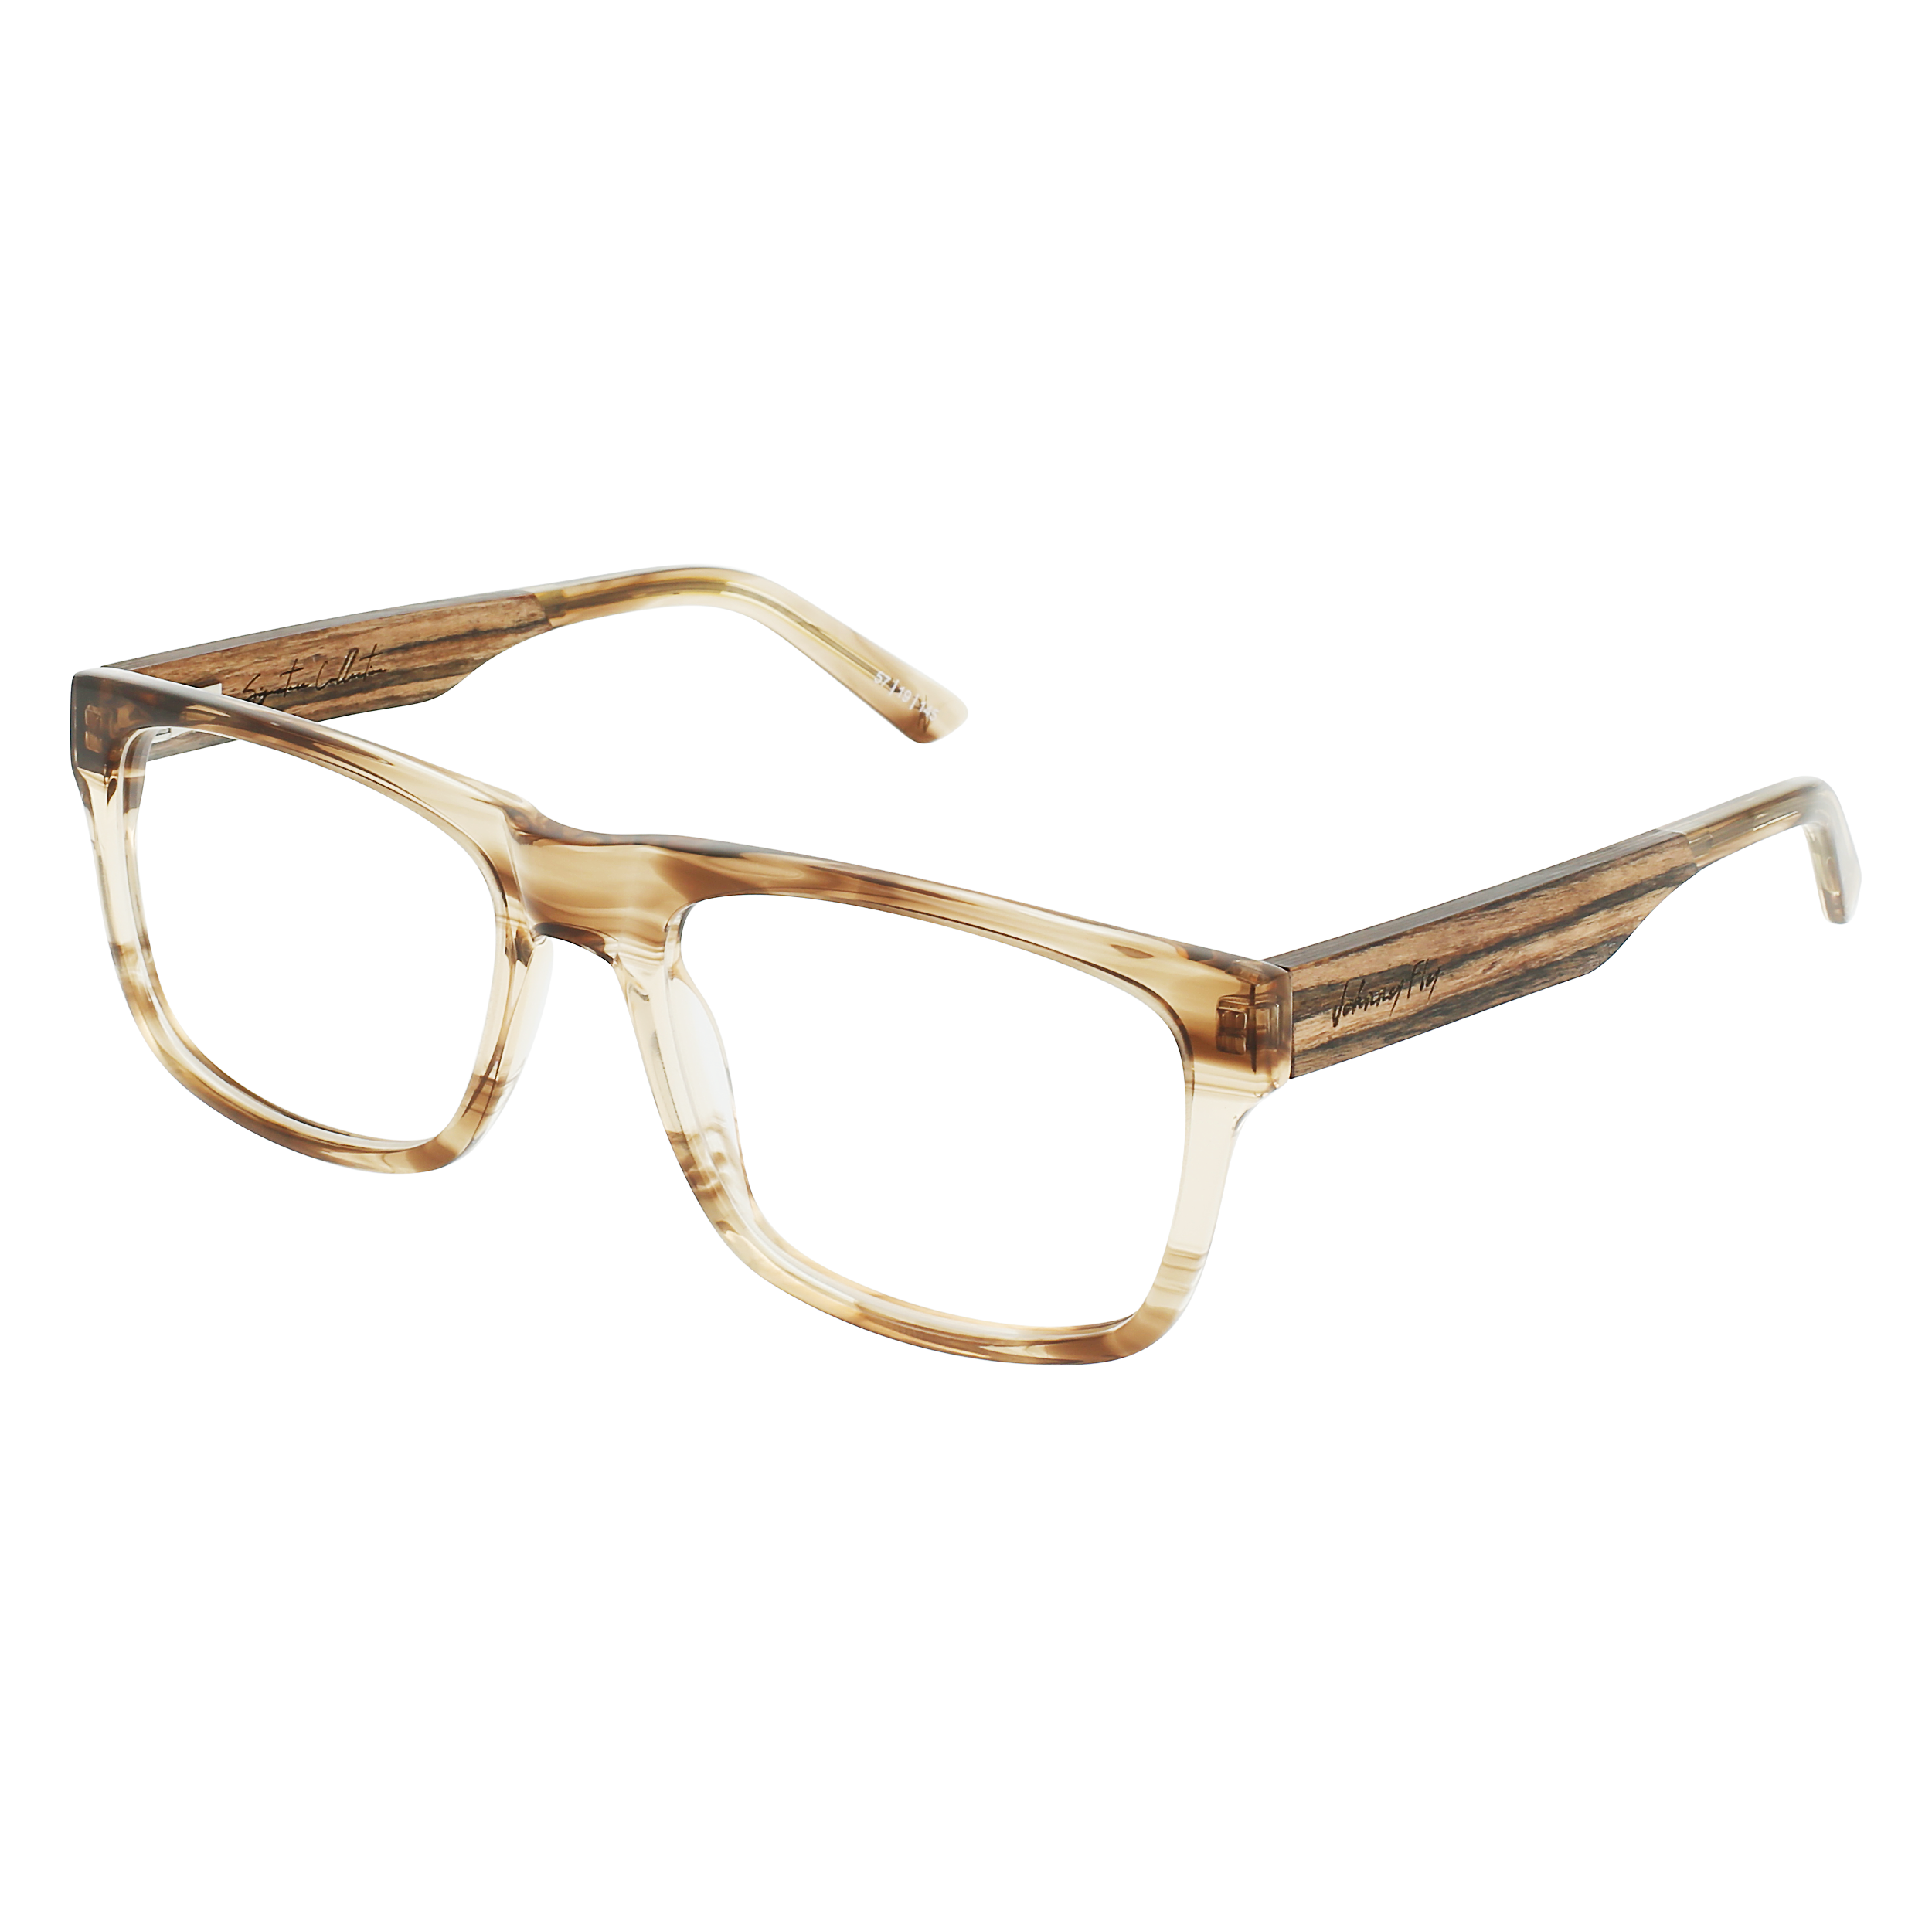 7THIRTY7 Eyeglasses Frame - Almond- Johnny Fly | 737-ALM-FRAME | | #color_almond